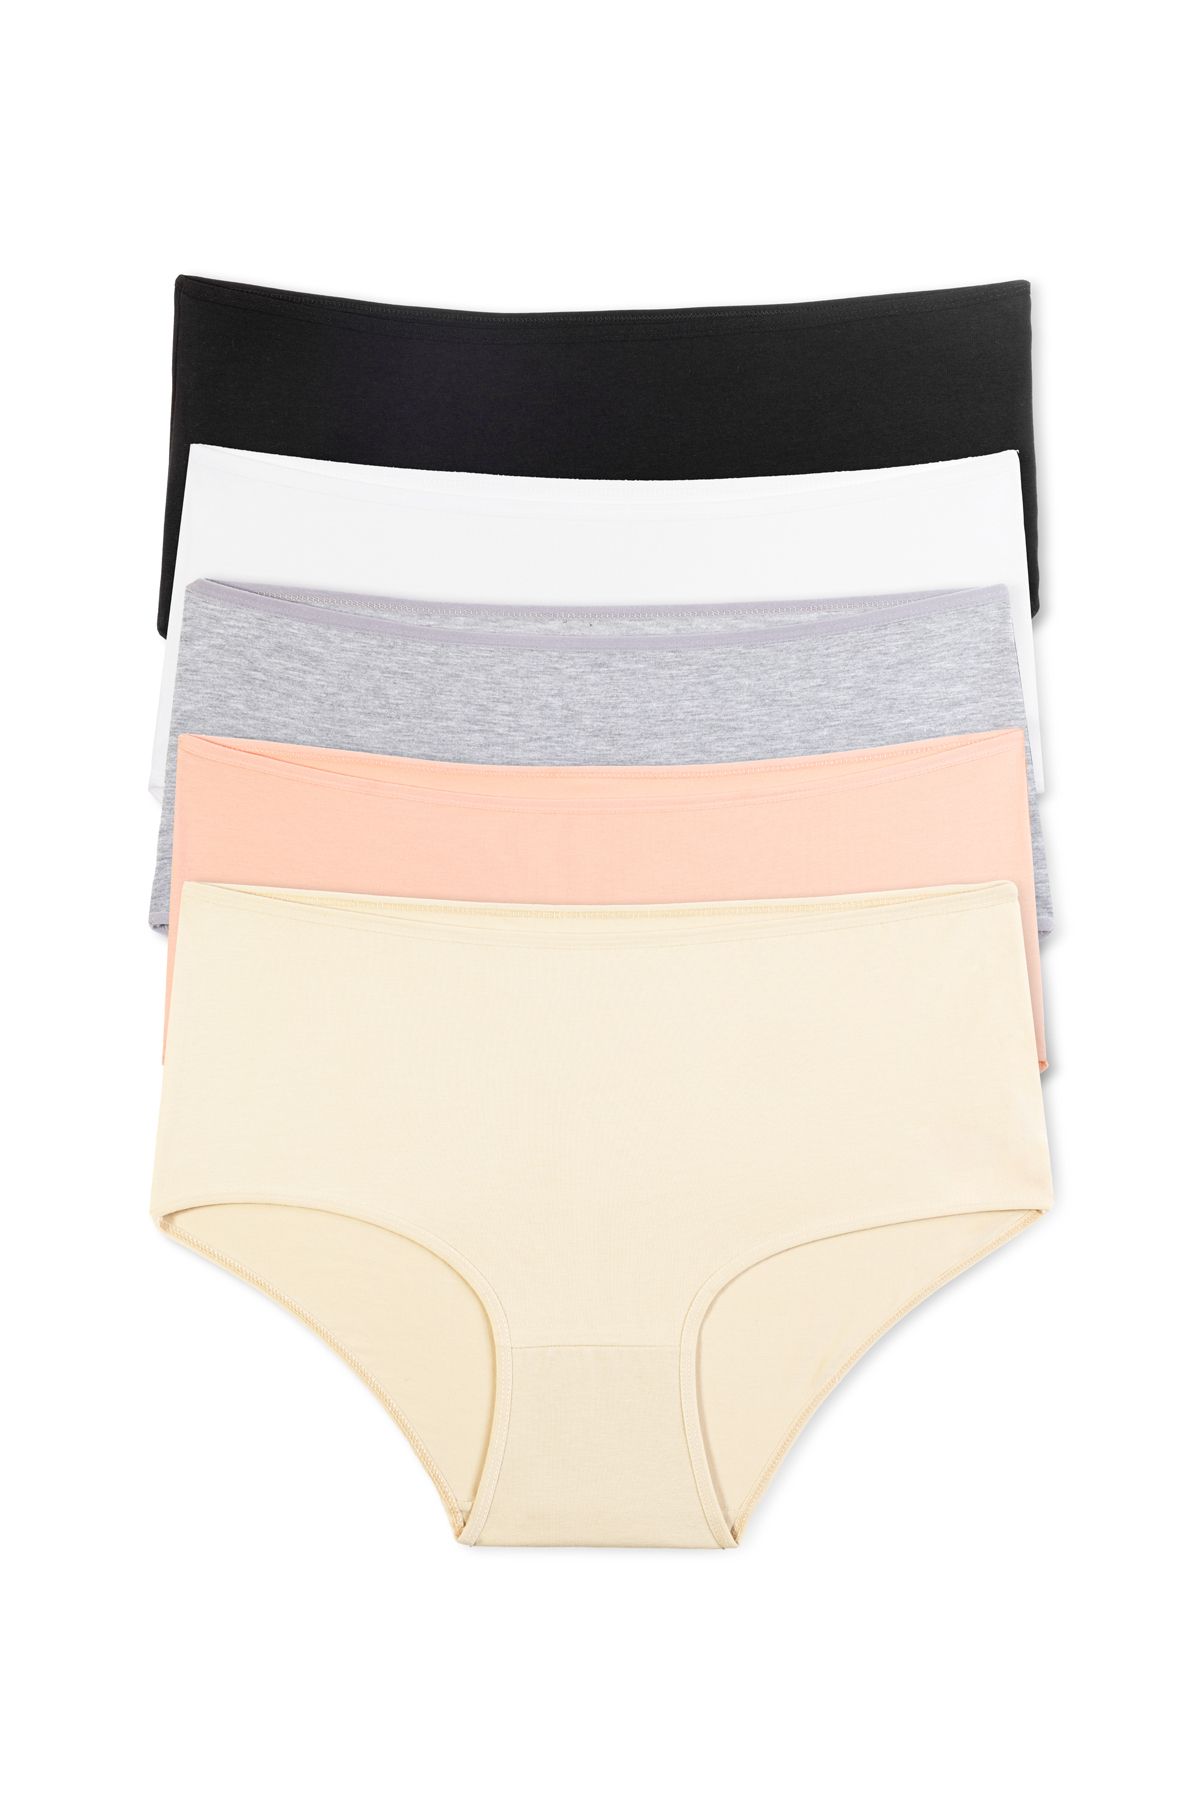 TAMPAP Women's Plus Size Panties Lycra 5 Pack Tampap - Trendyol